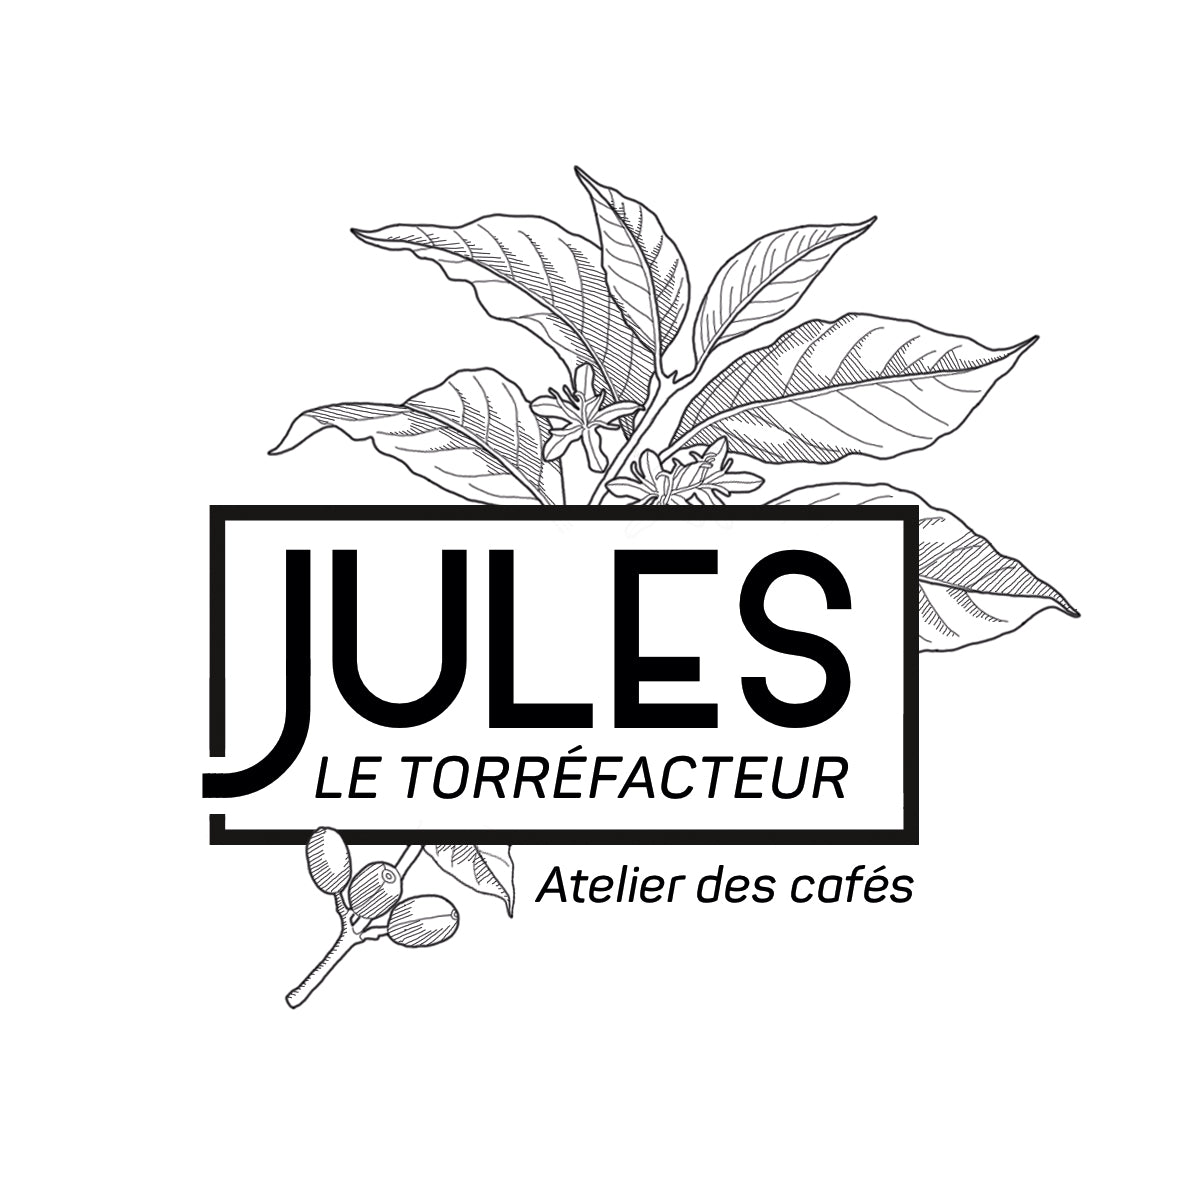 Cafés Jules